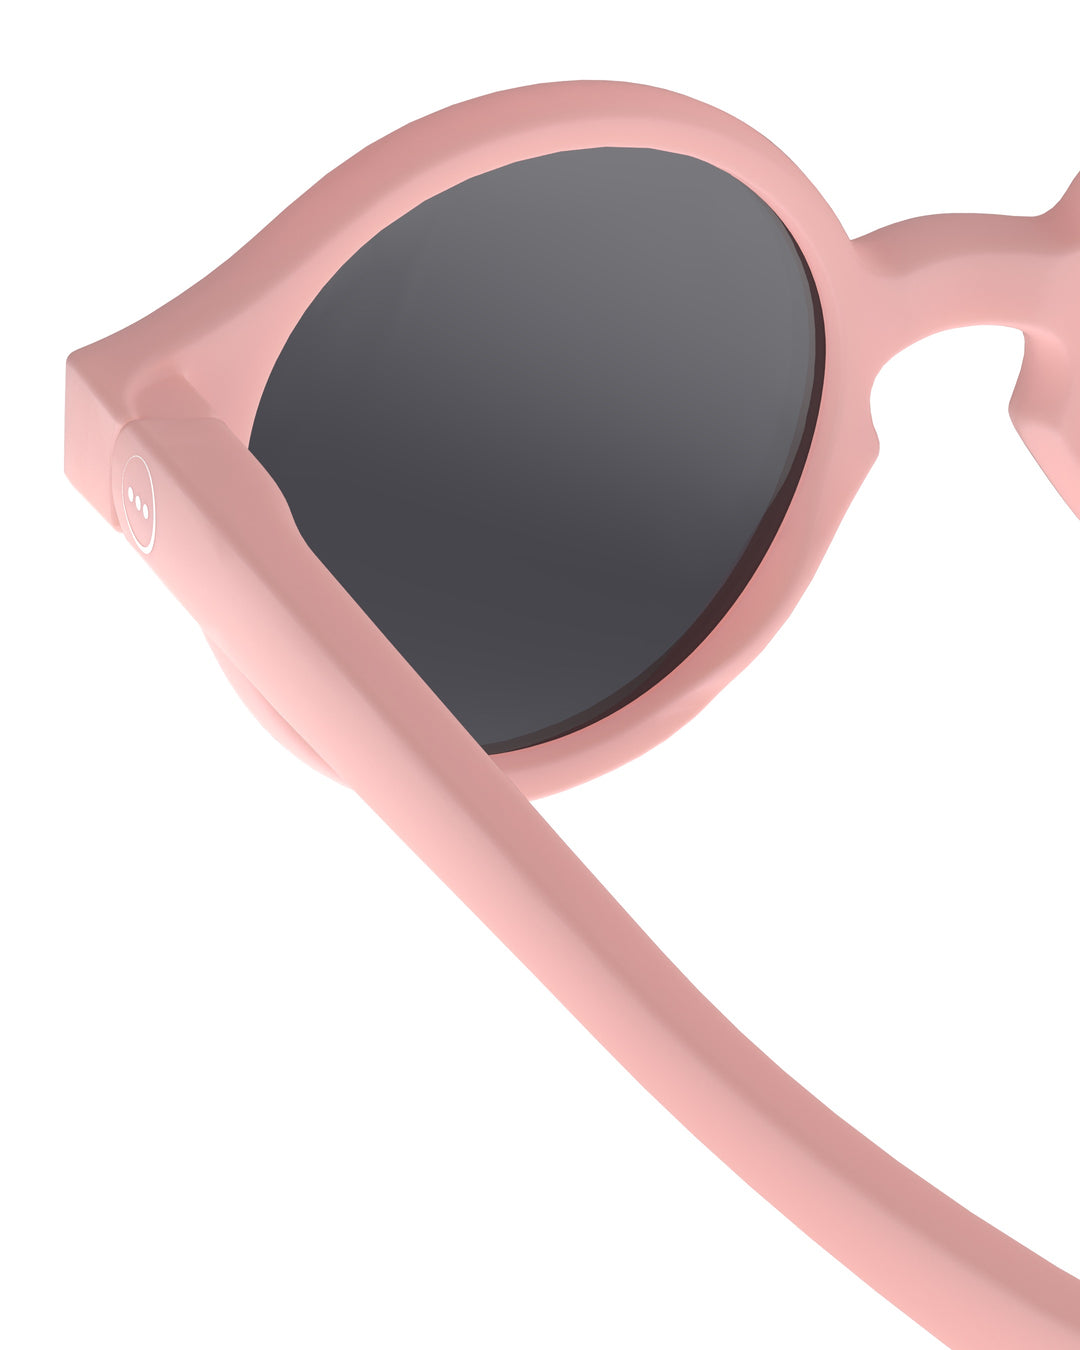 Izipizi | Occhiali da sole flessibili UV400, 0-9 mesi Rosa